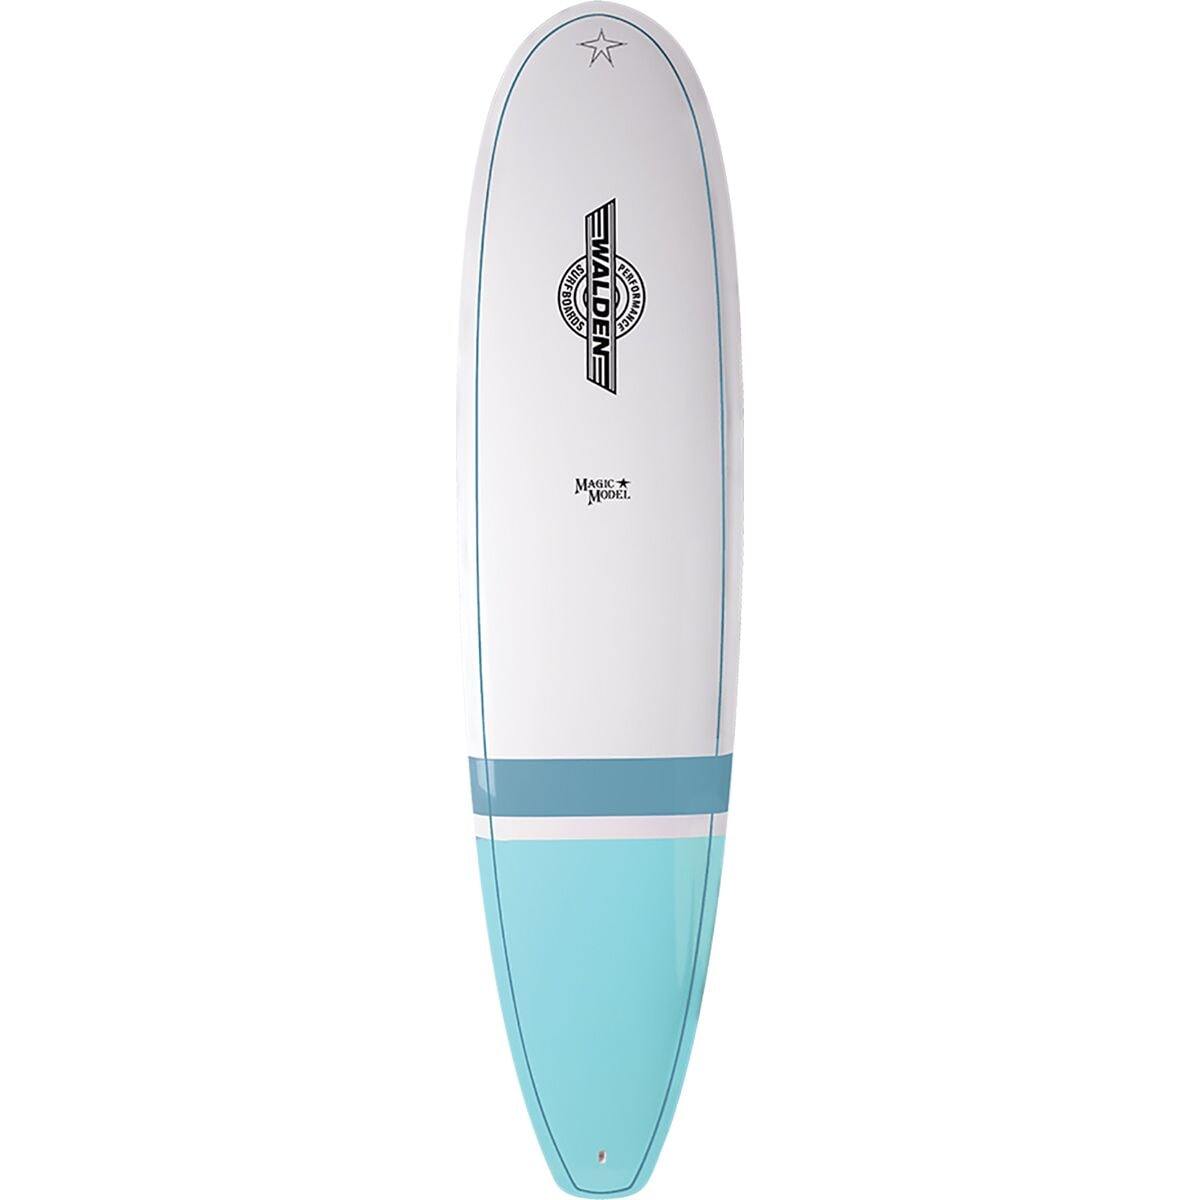 Walden Surfboards Magic Model Longboard Surfboard